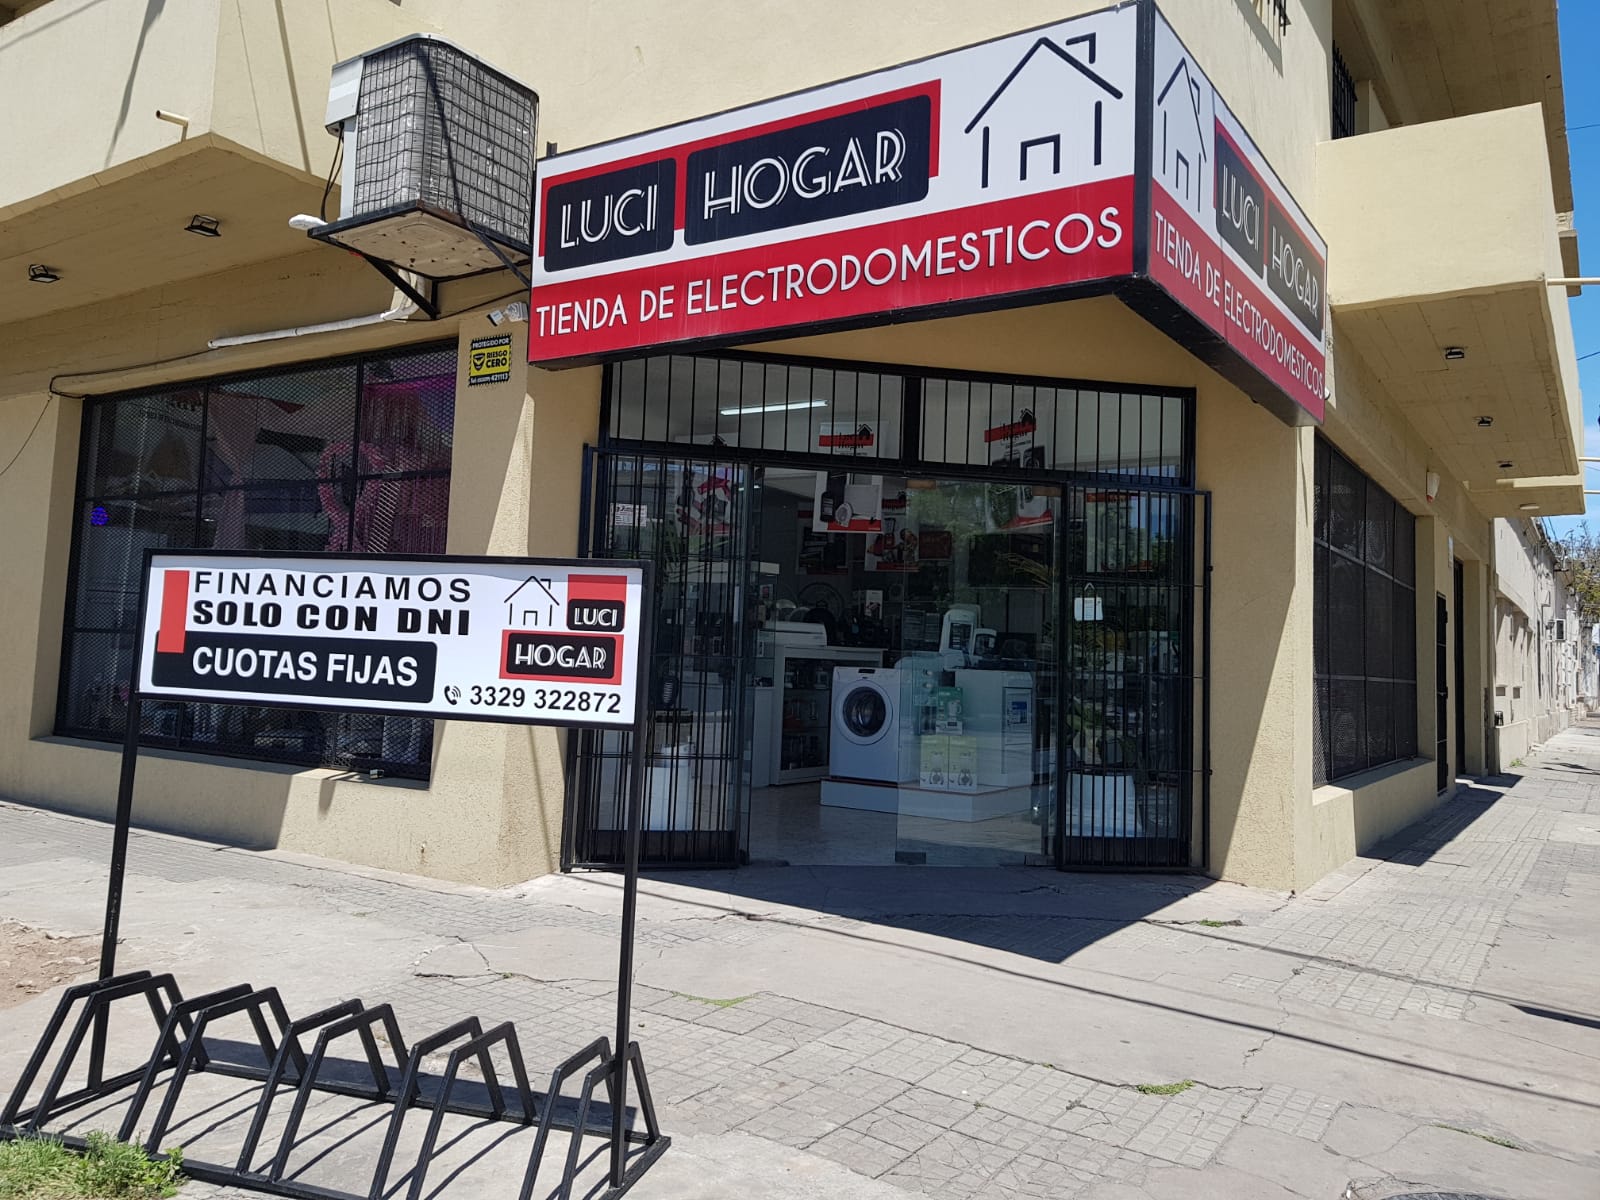 Luci Cell y Luci Hogar: Celulares reparados, todos los accesorios y electrodomésticos para tu casa | La Opinión